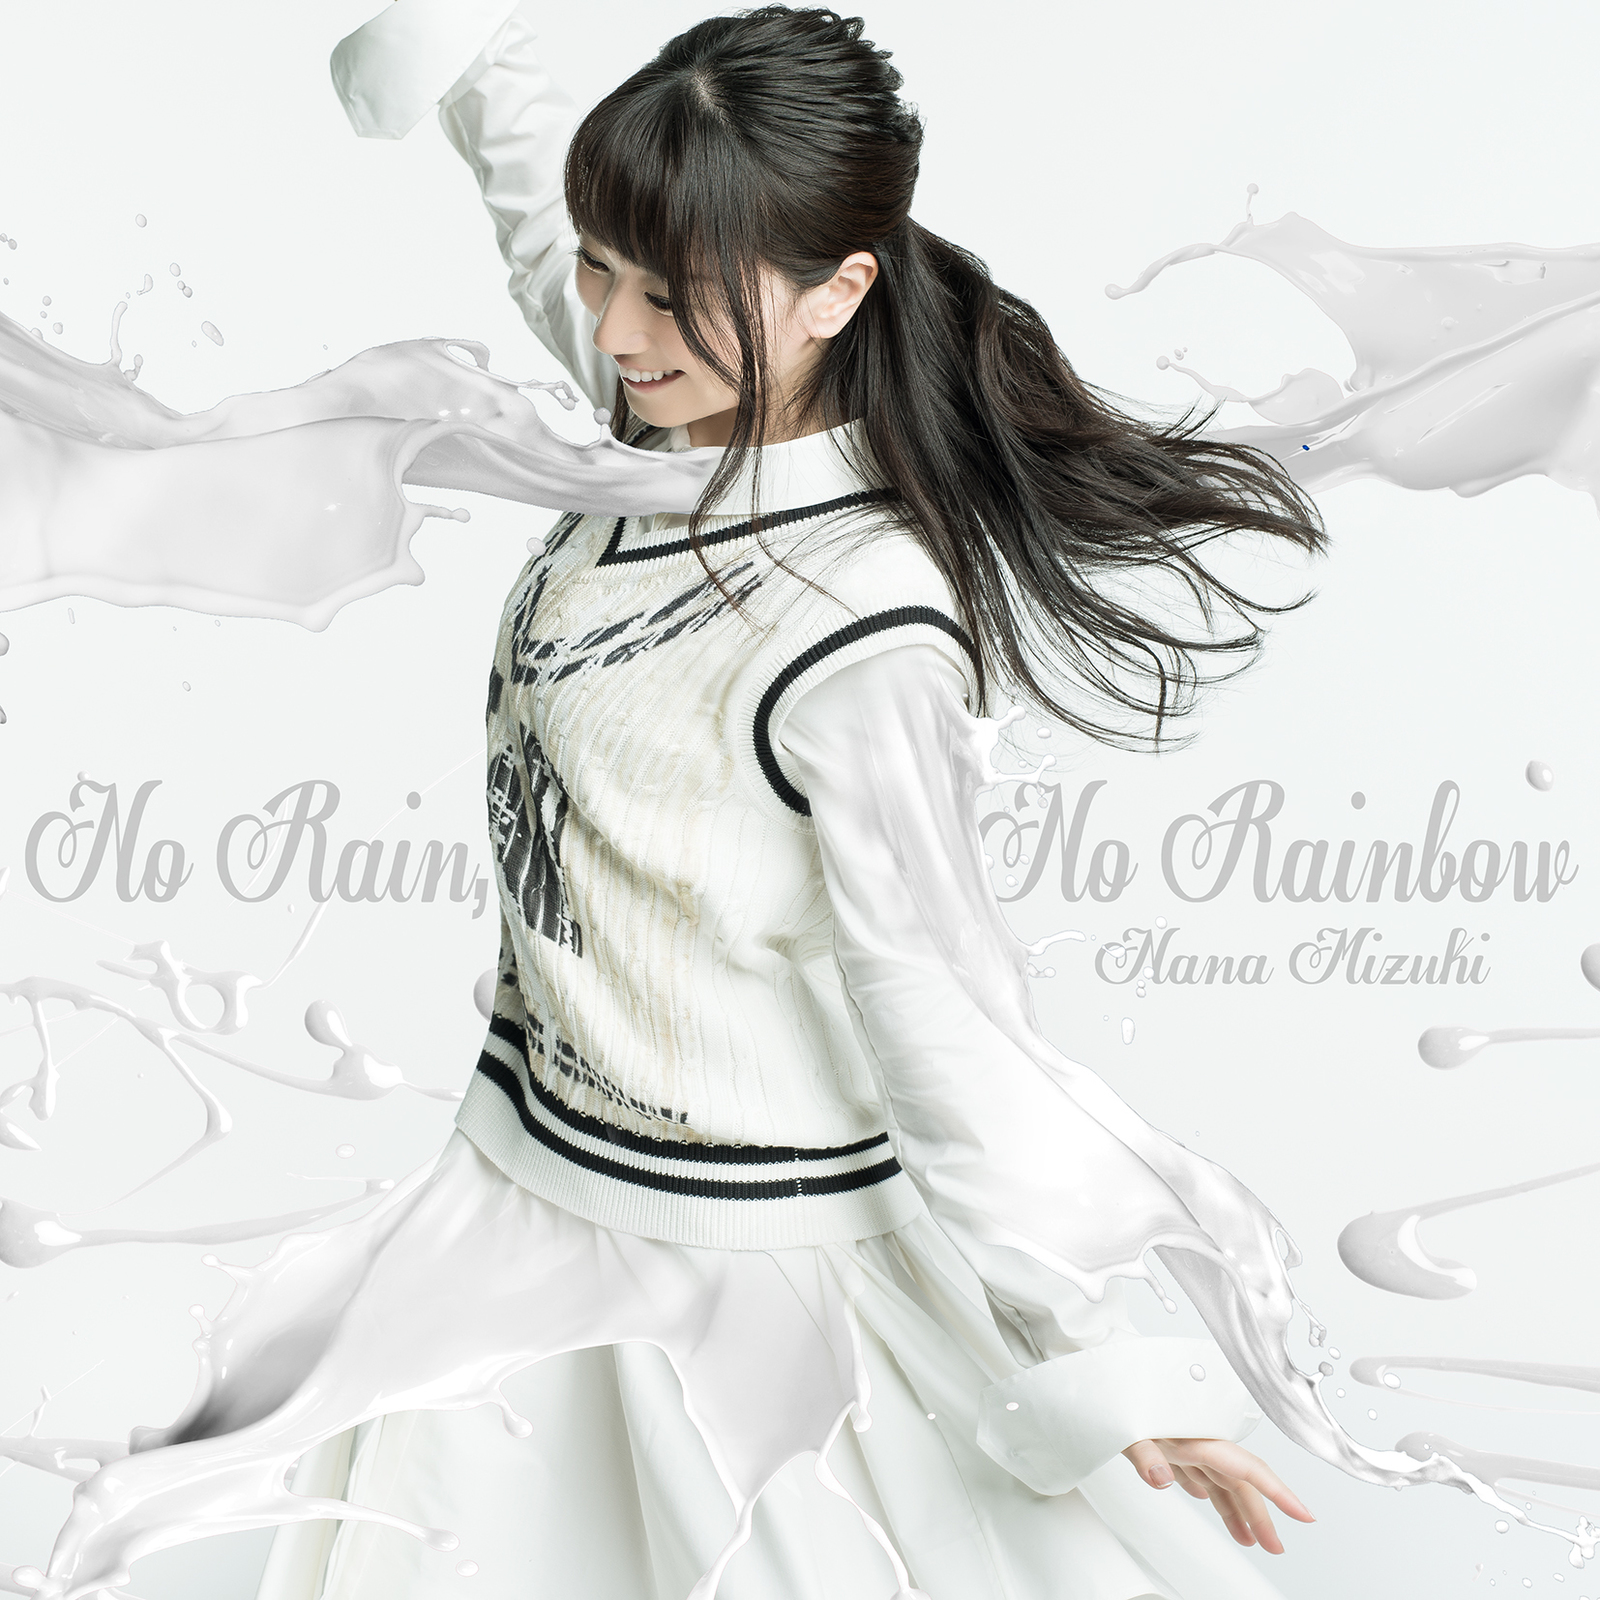 Nana Mizuki - No Rain, No Rainbow